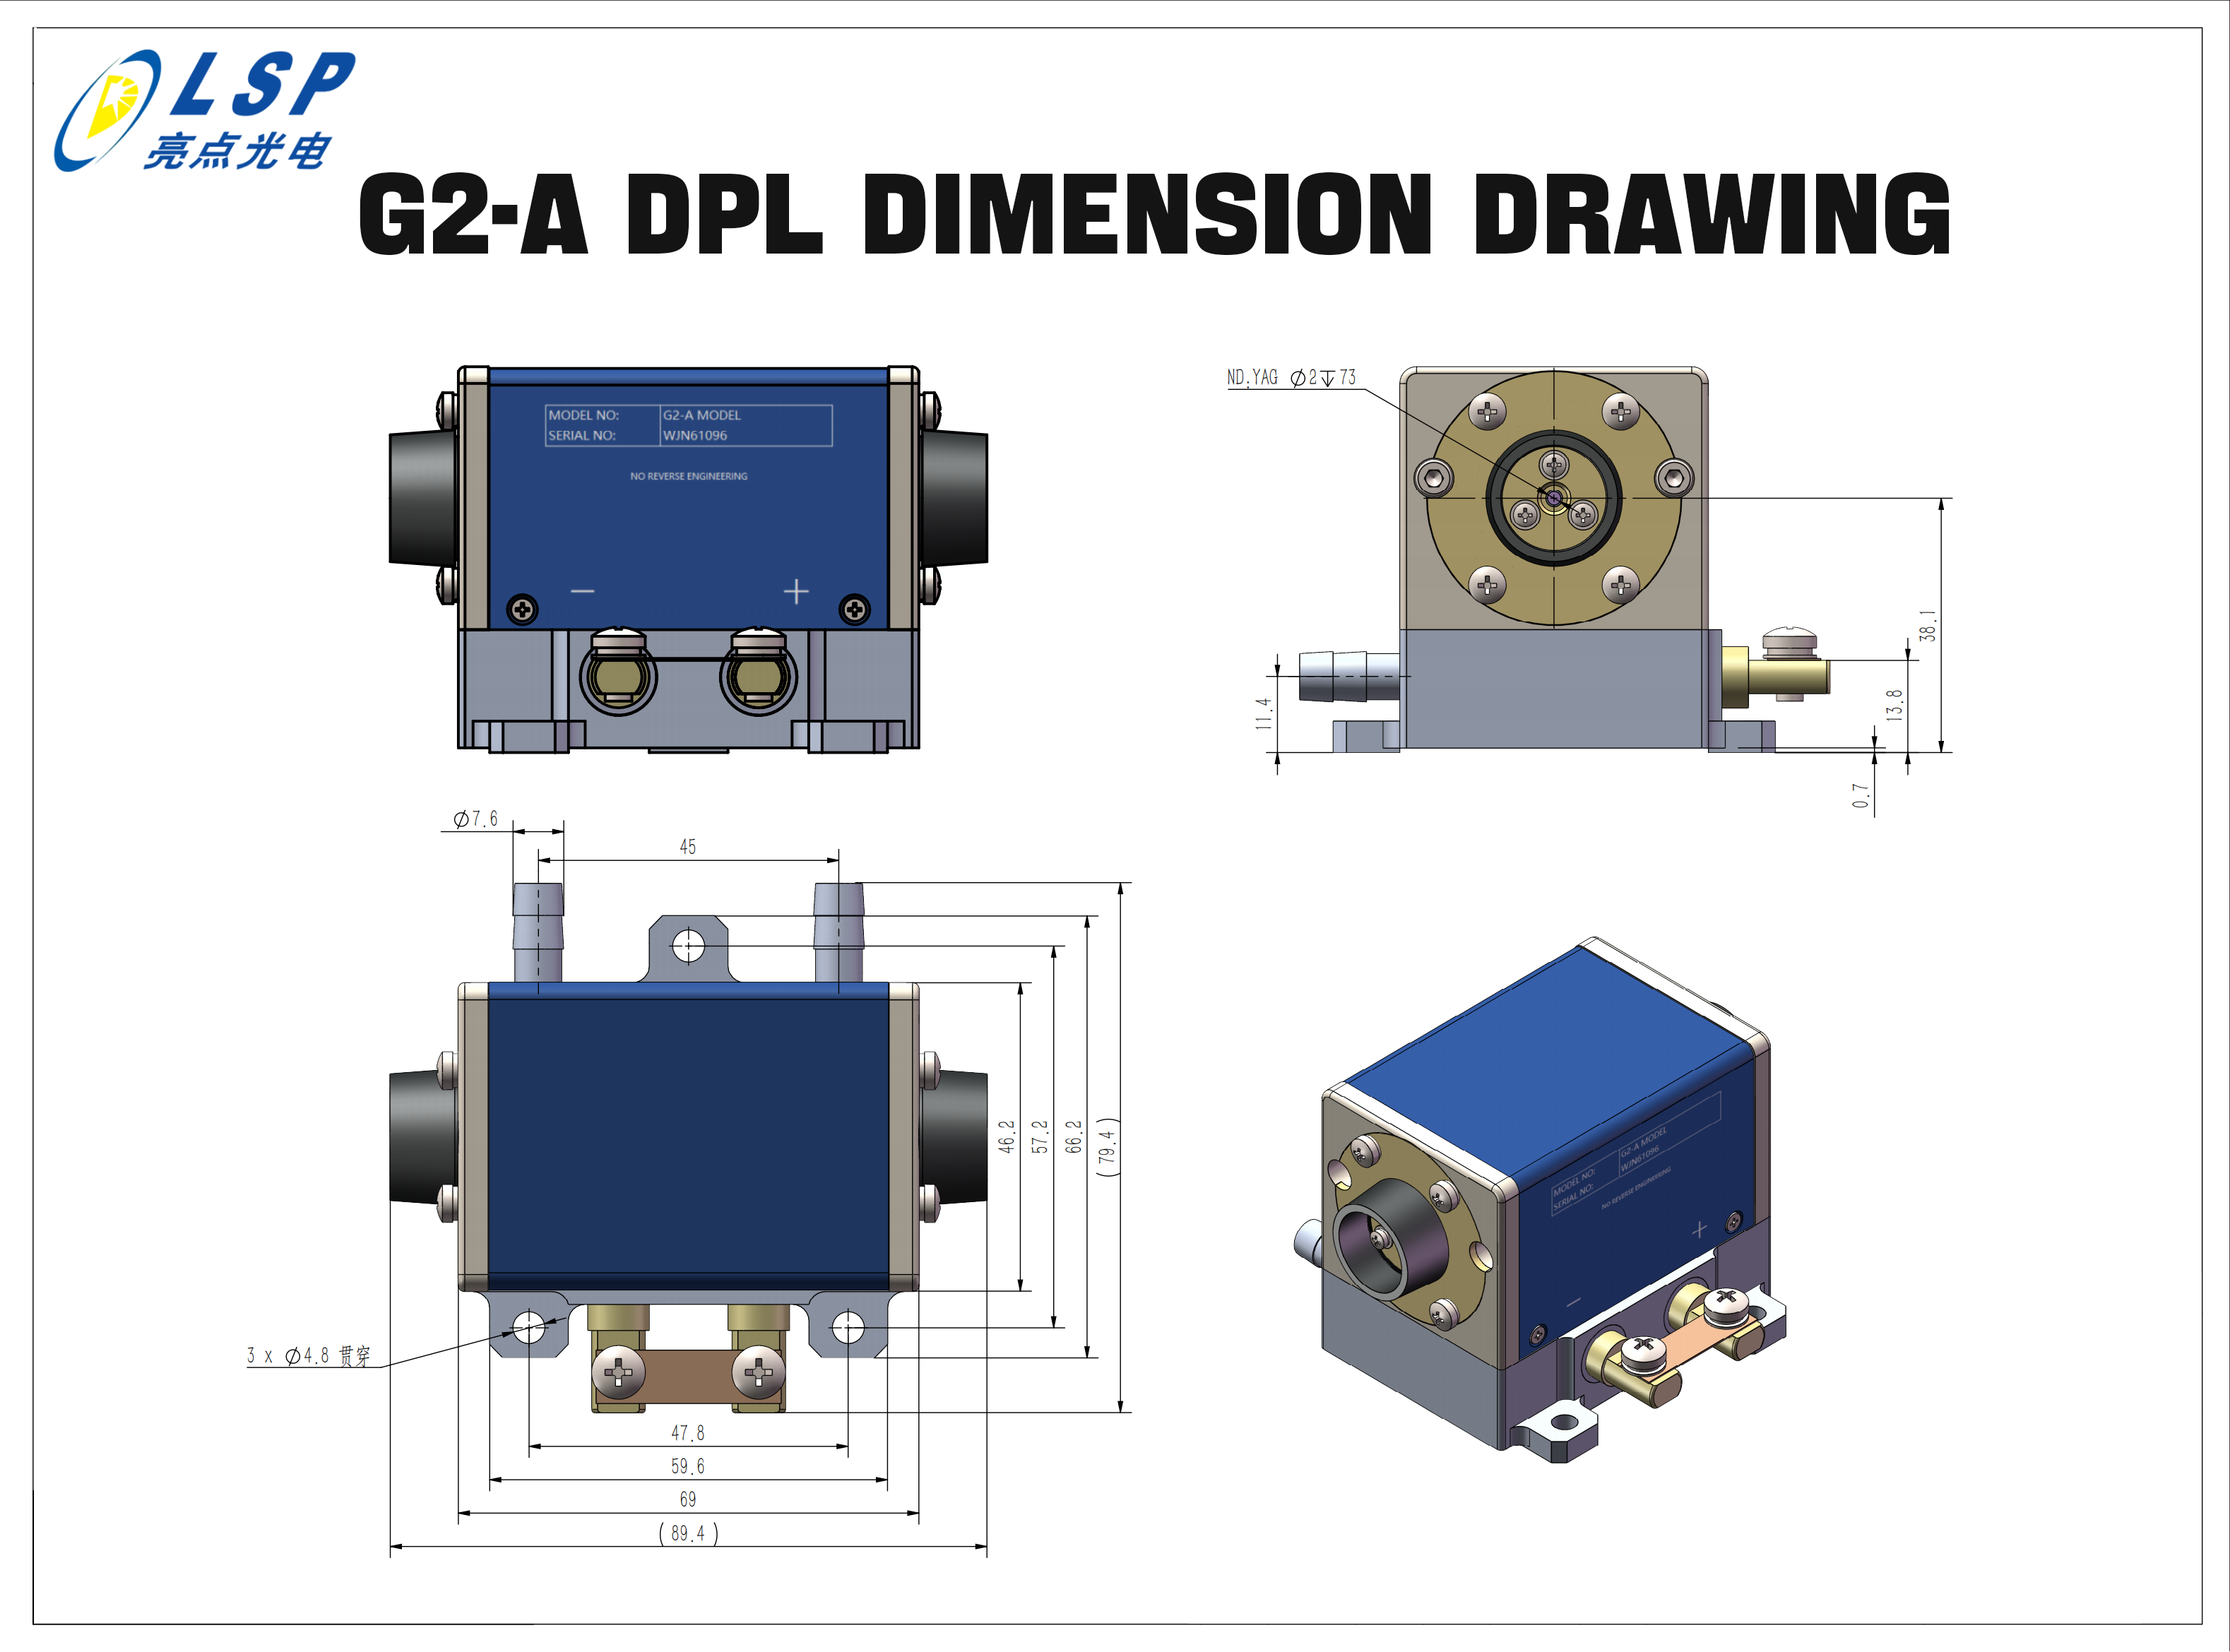 Dimensjonstegning av G2-A